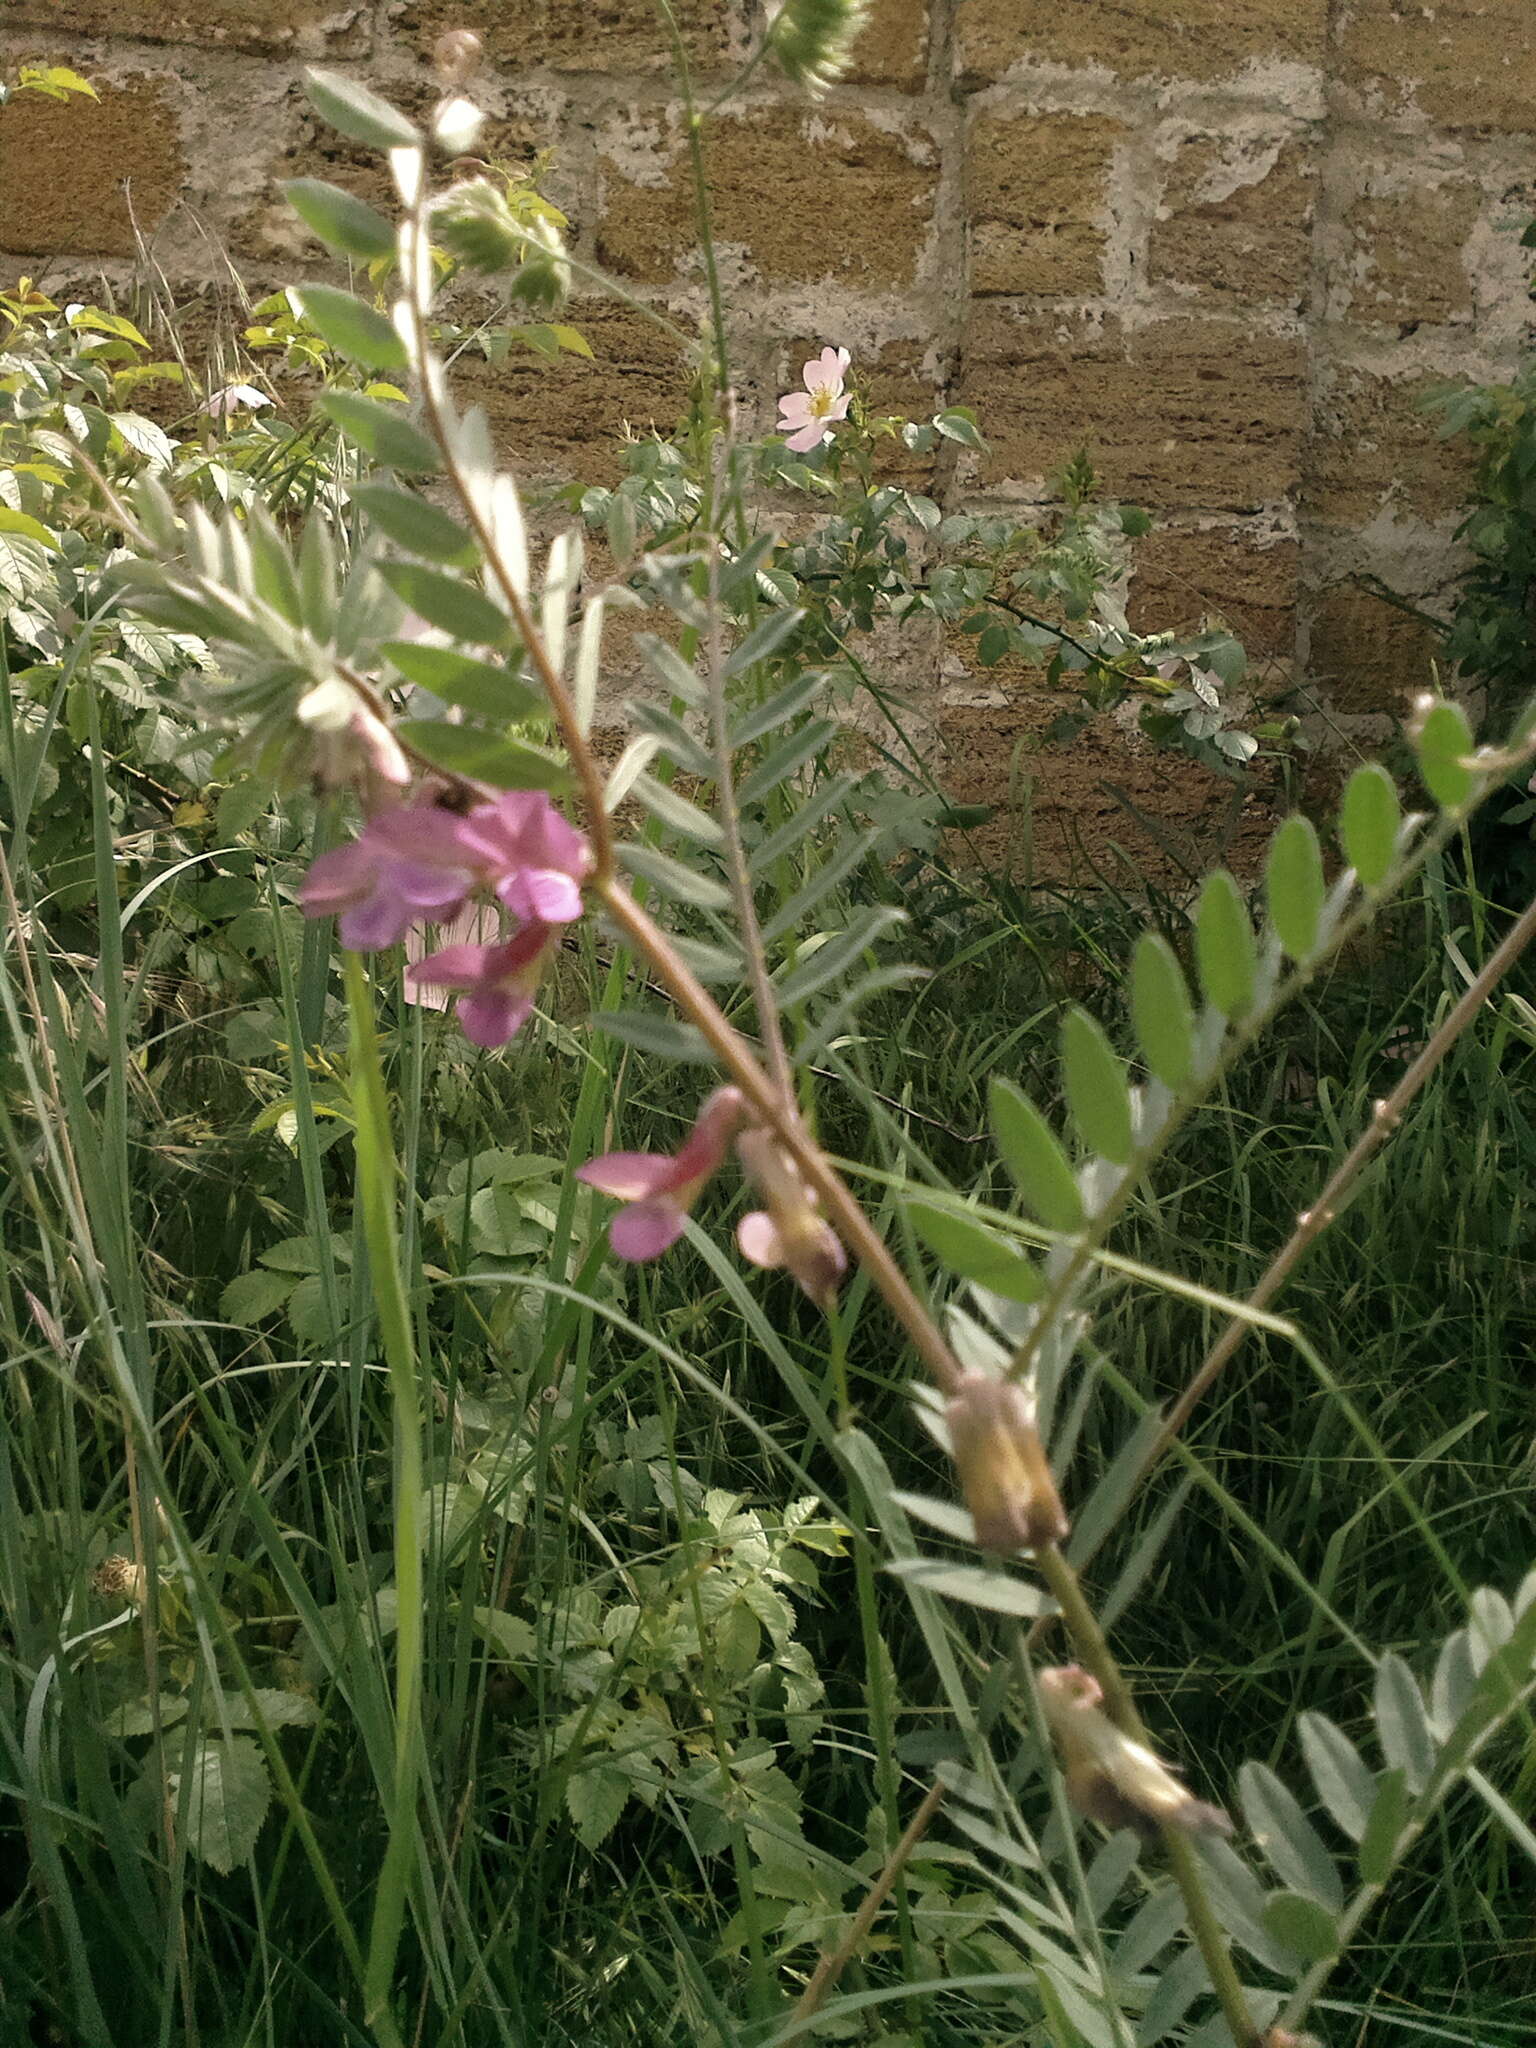 Imagem de Vicia pannonica subsp. striata